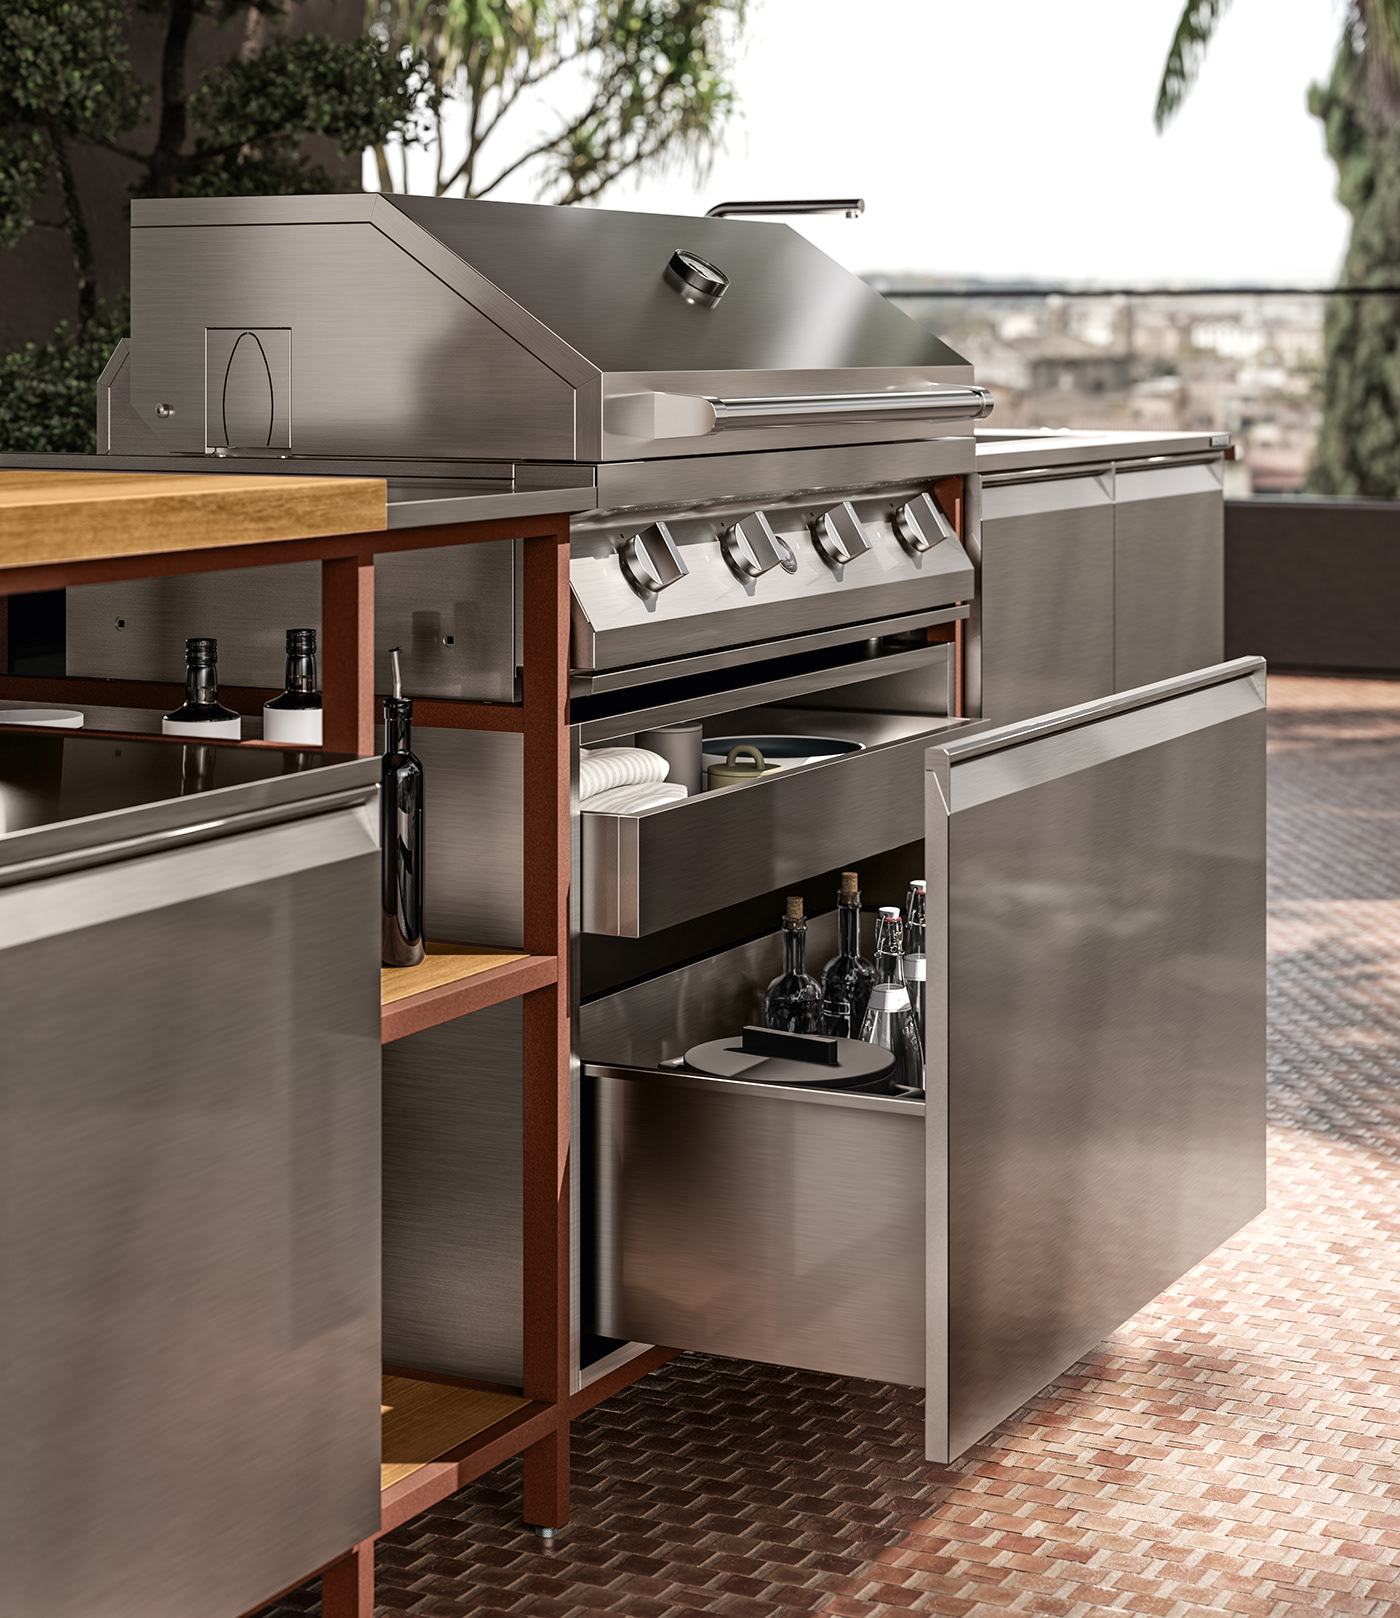 3D CGI design exterior interior design  kitchen new Render visualization